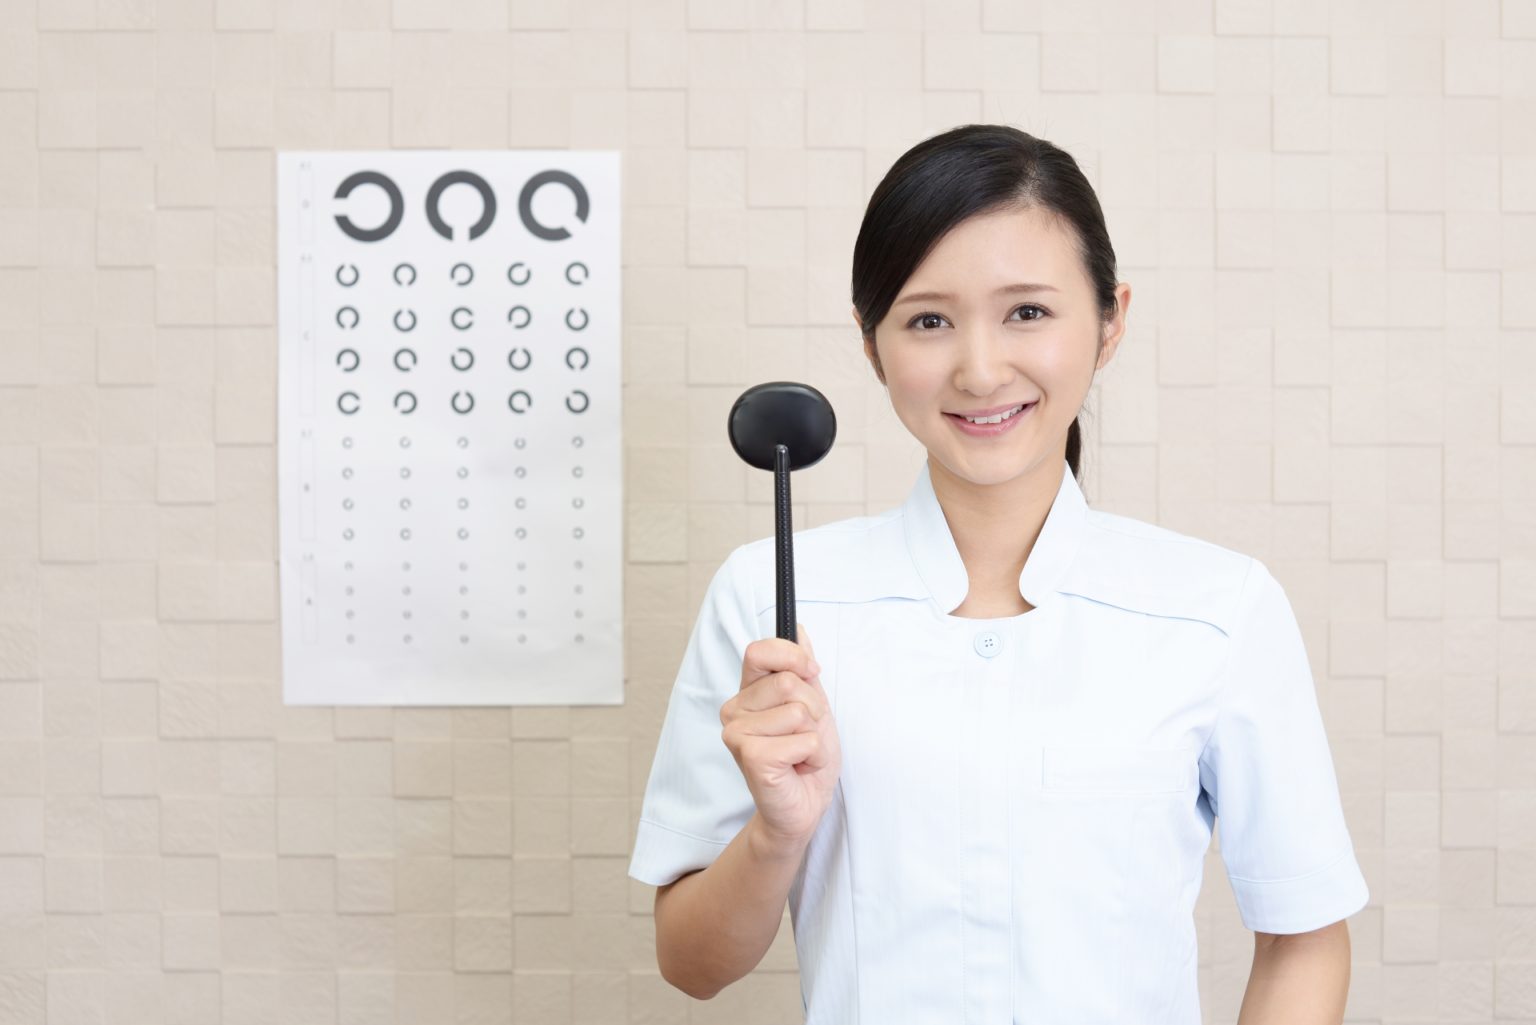 フタワソニック｜視力回復に役立つ超音波治療器 | 福岡の視力屋 めがね物語